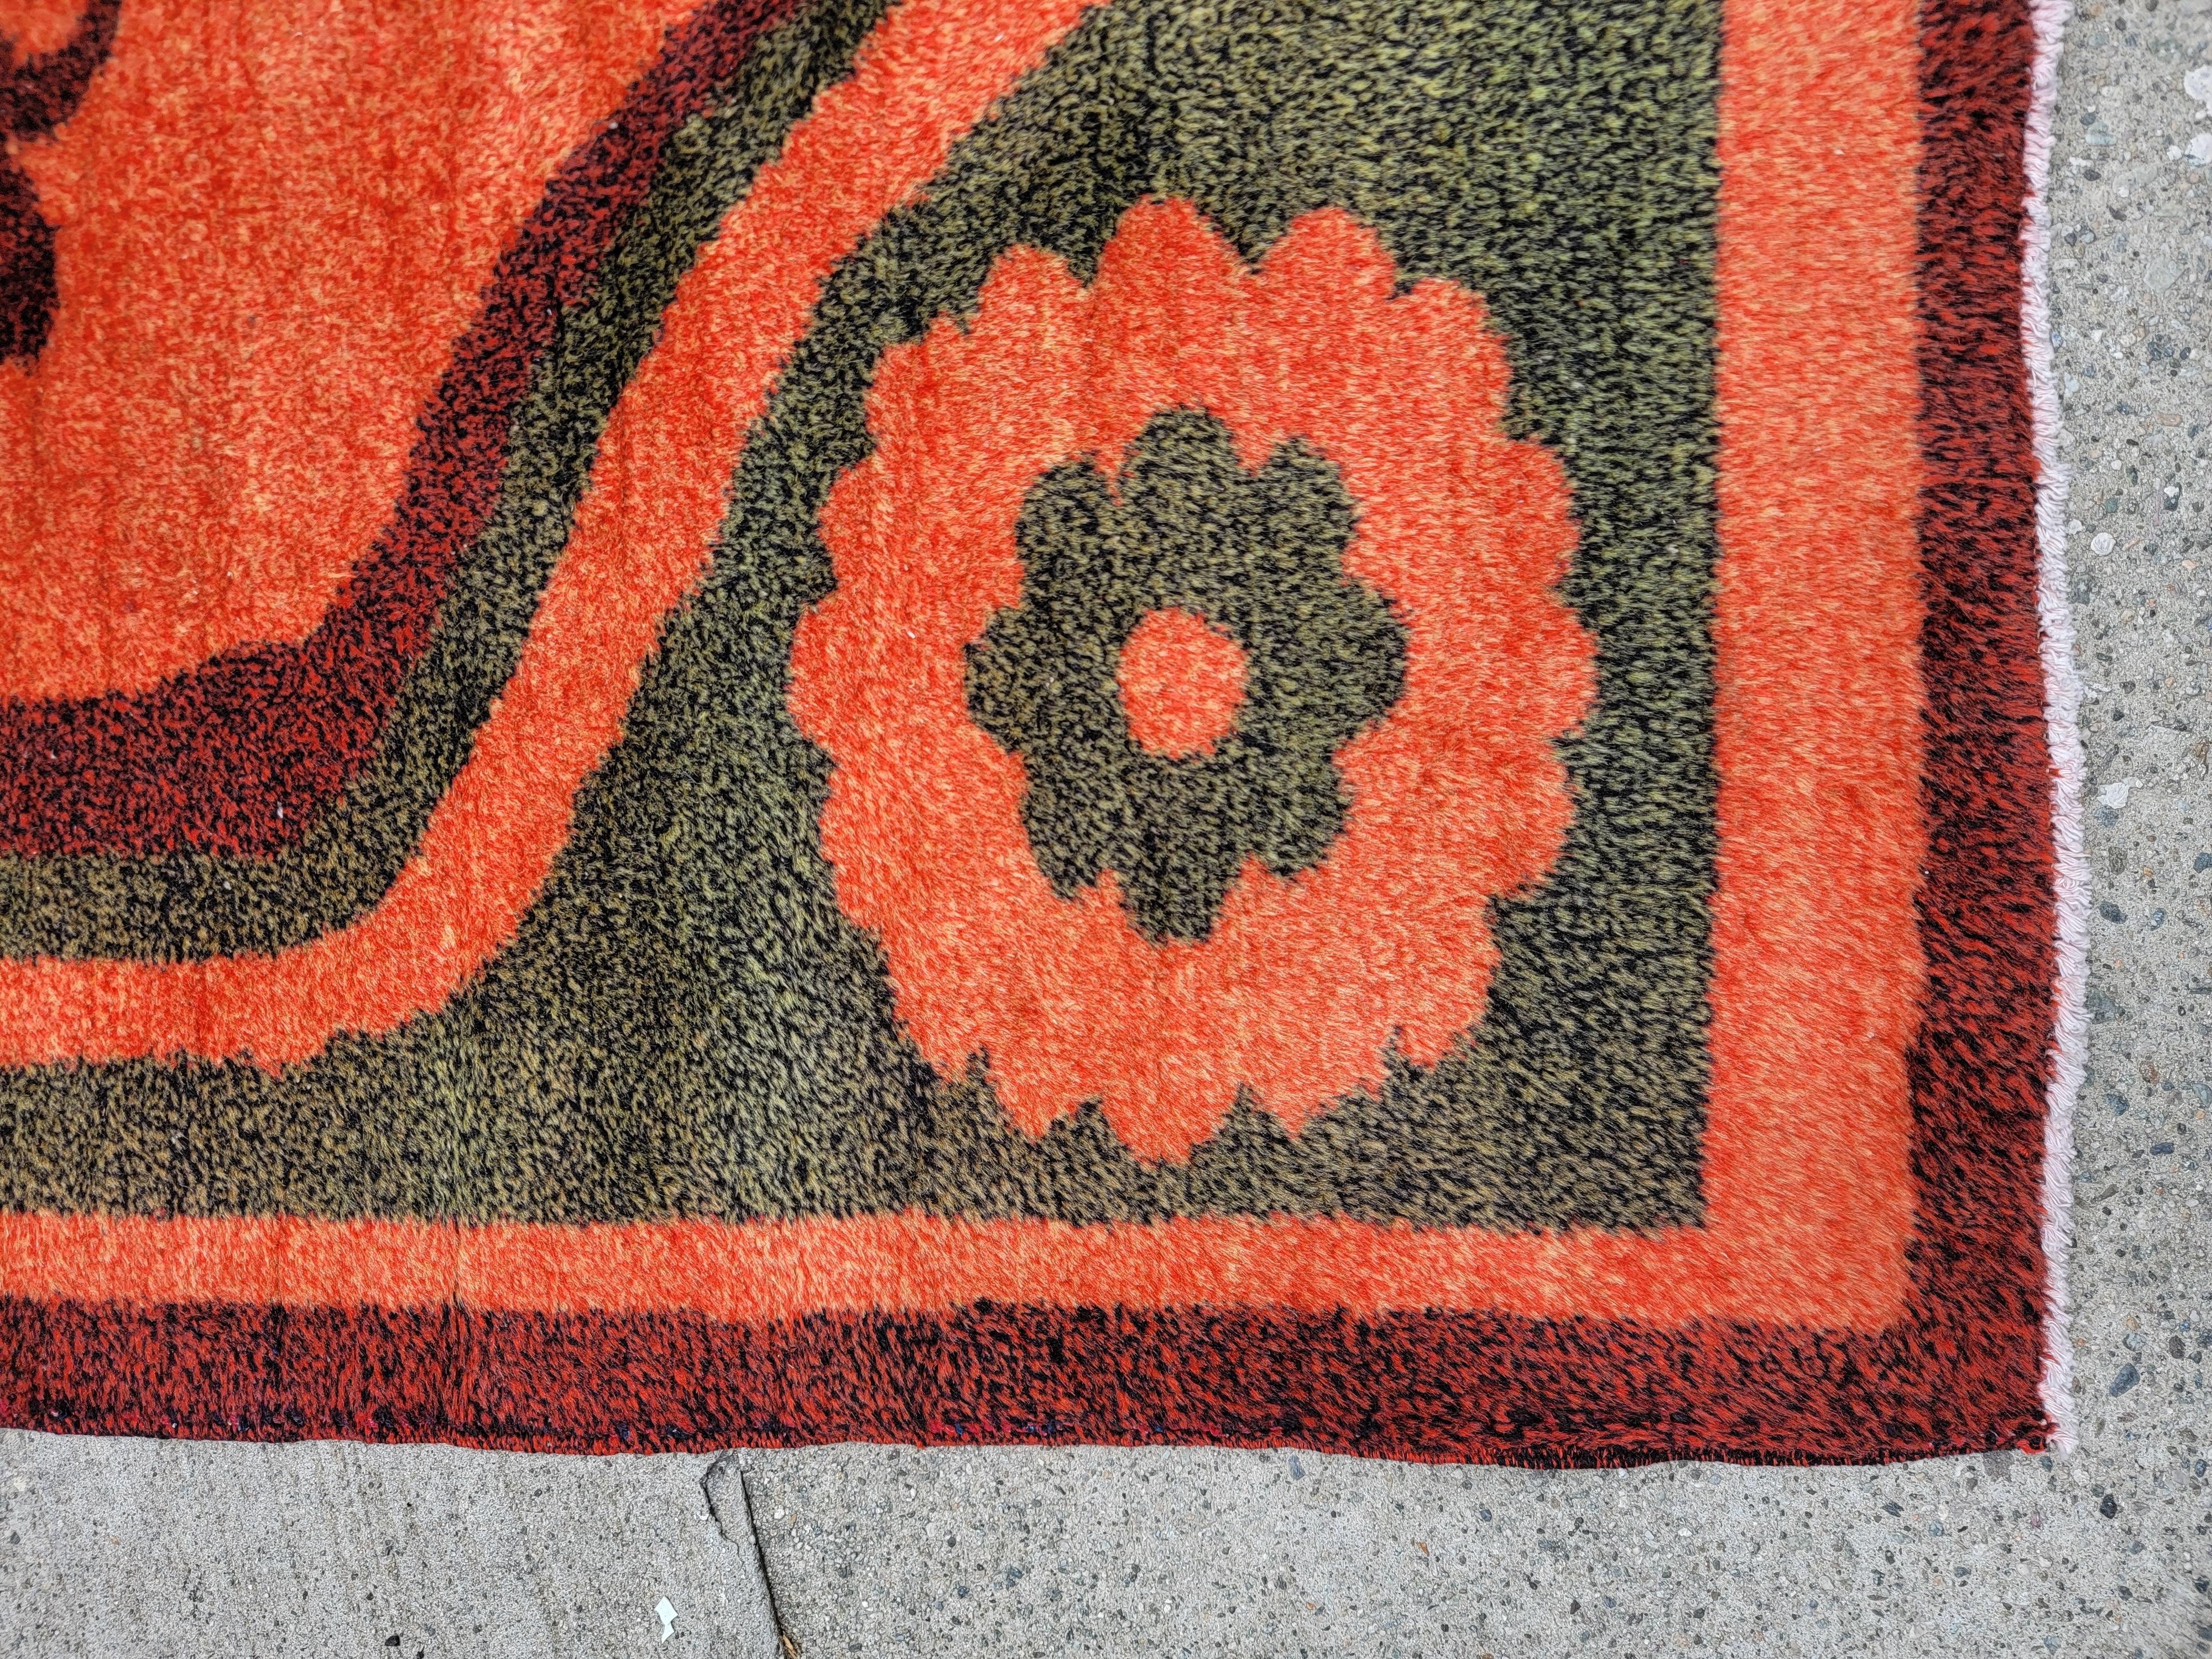 Mitte des Jahrhunderts Retro europäischen Hand Made Teppich mit einem schönen orange und grün floralen Design. 4 enthaltene Blumen in den Ecken, die die innere größere Blume enthalten. Passt hervorragend zu einem modernen oder skandinavisch